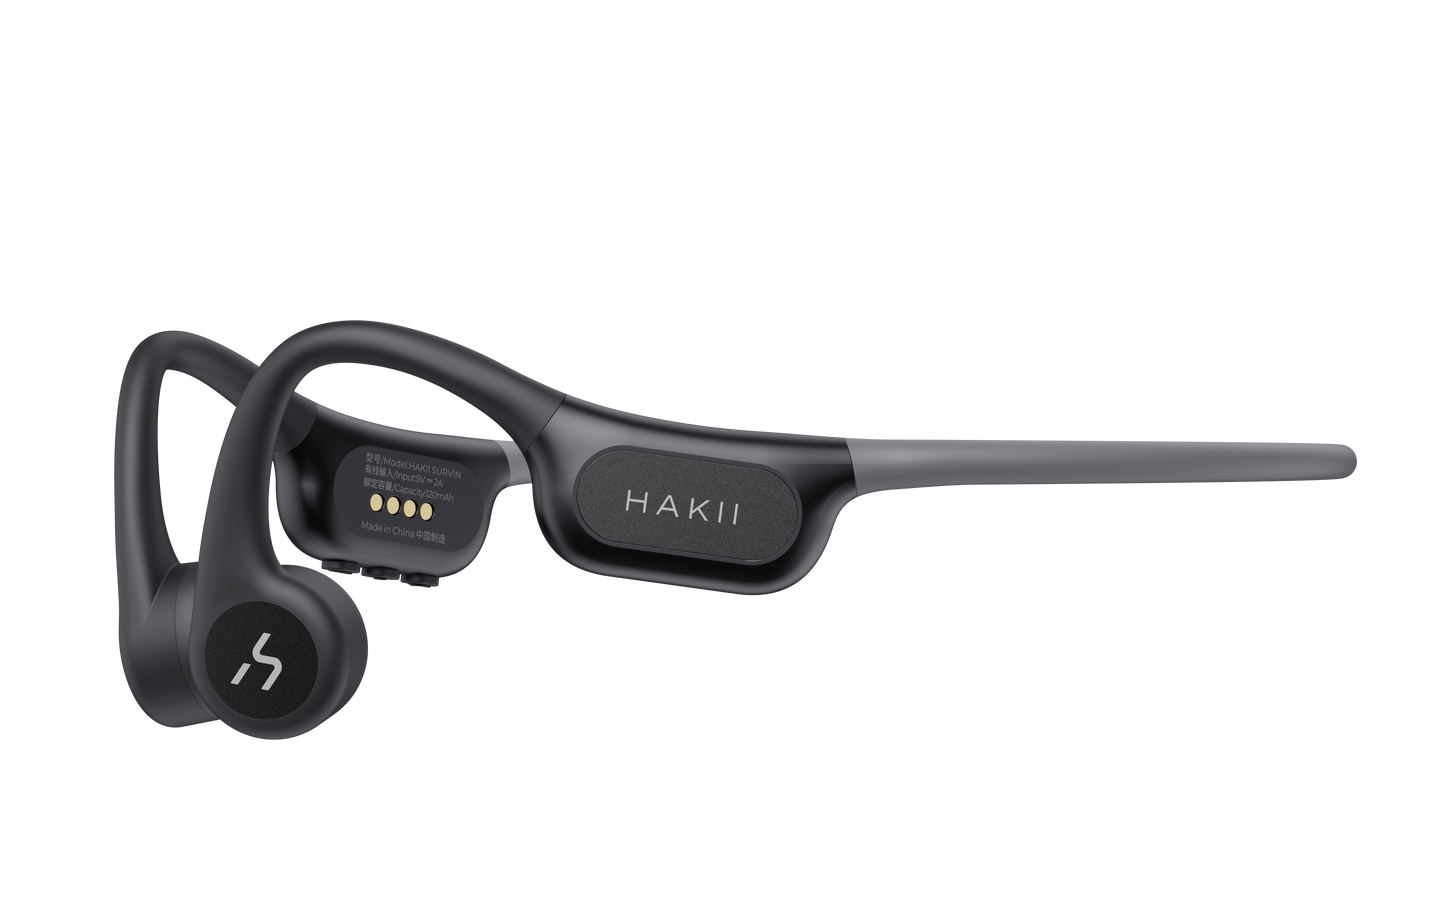 HAKII SURVIN Wireless & Mp3 Sports Earphones